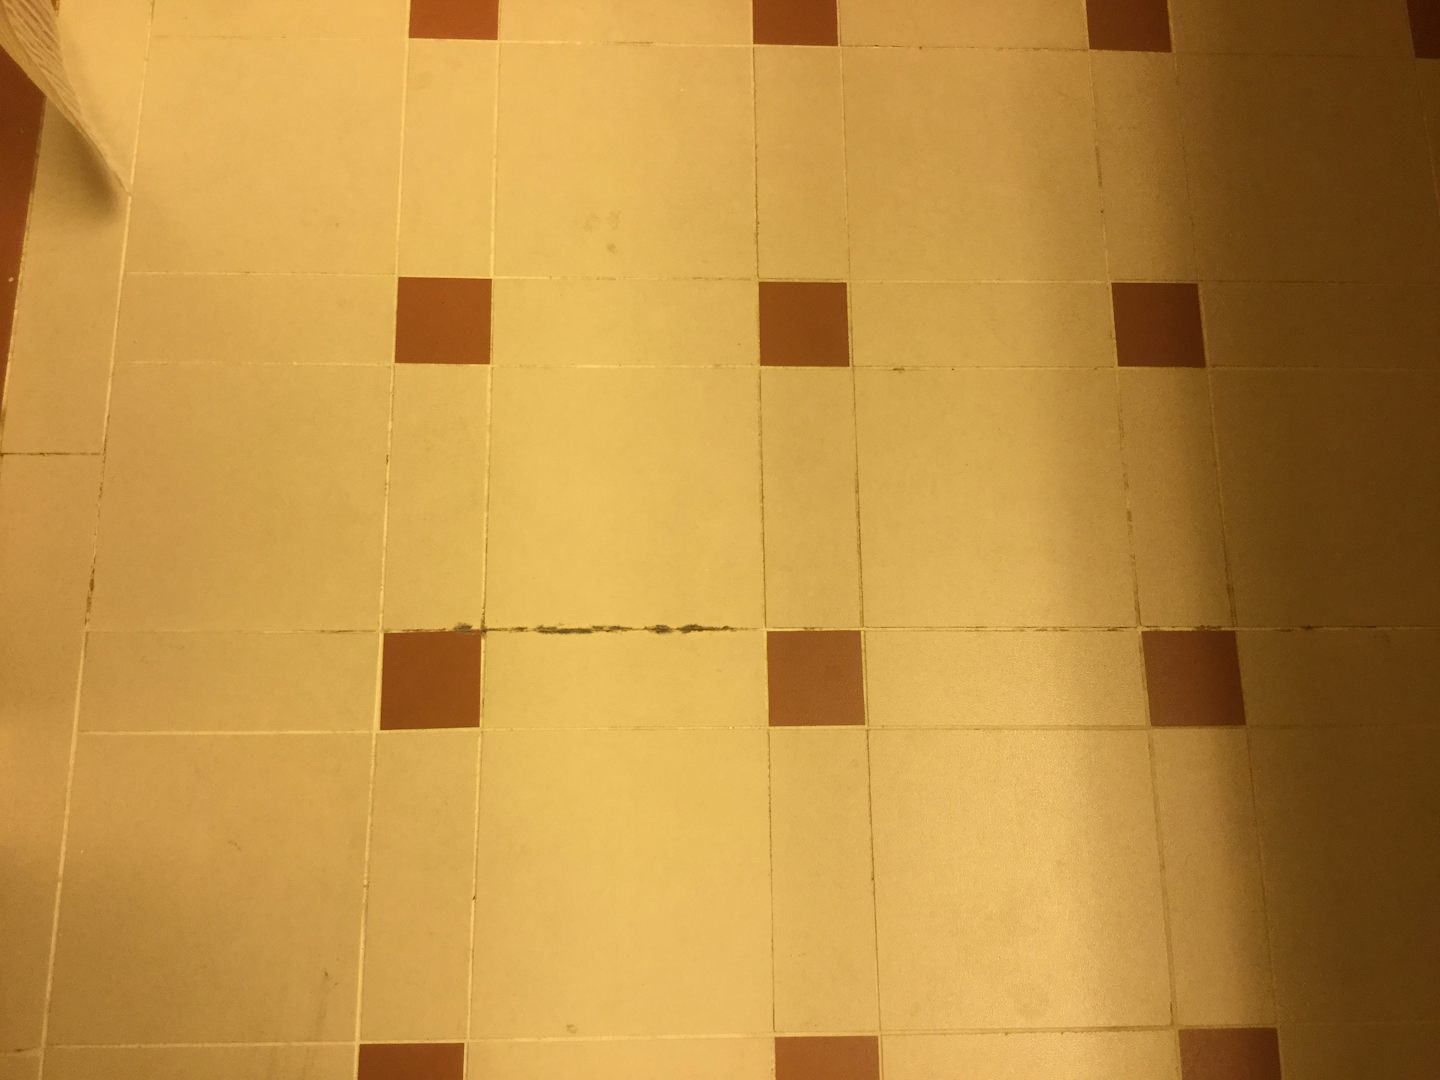 Cracked floor